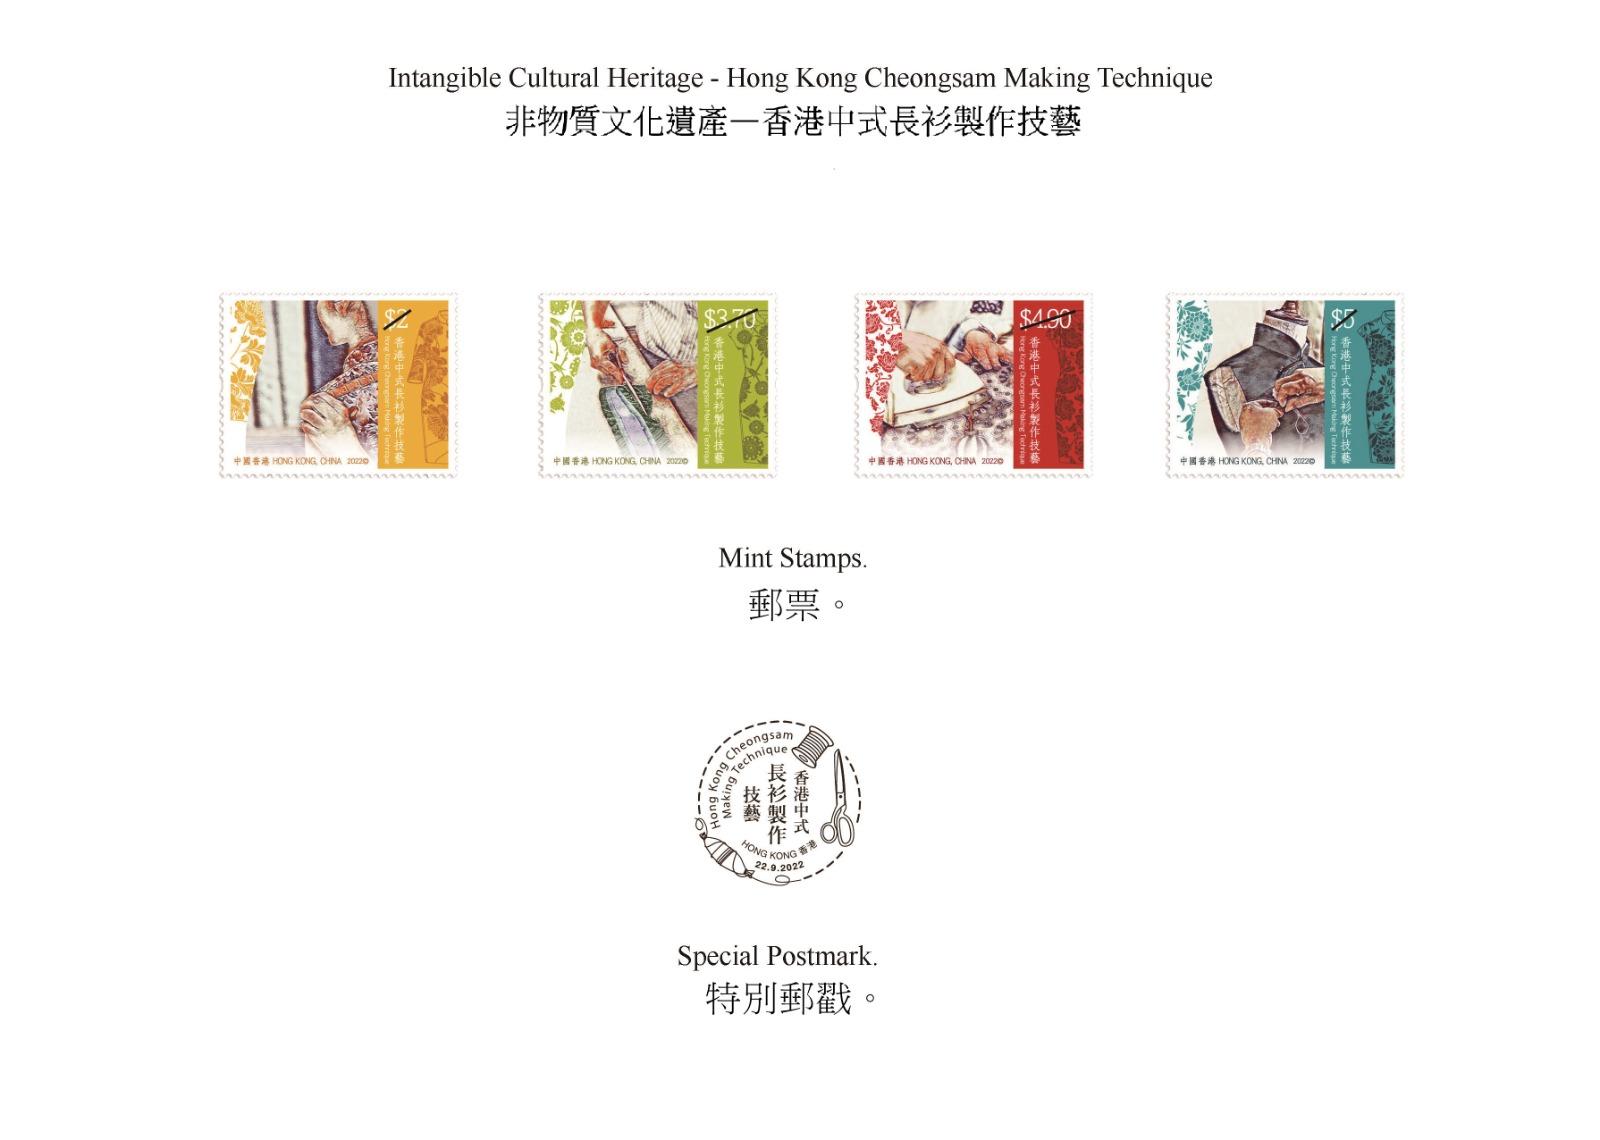 香港郵政九月二十二日（星期四）發行以「非物質文化遺產──香港中式長衫製作技藝」為題的特別郵票及相關集郵品。圖示郵票和特別郵戳。
